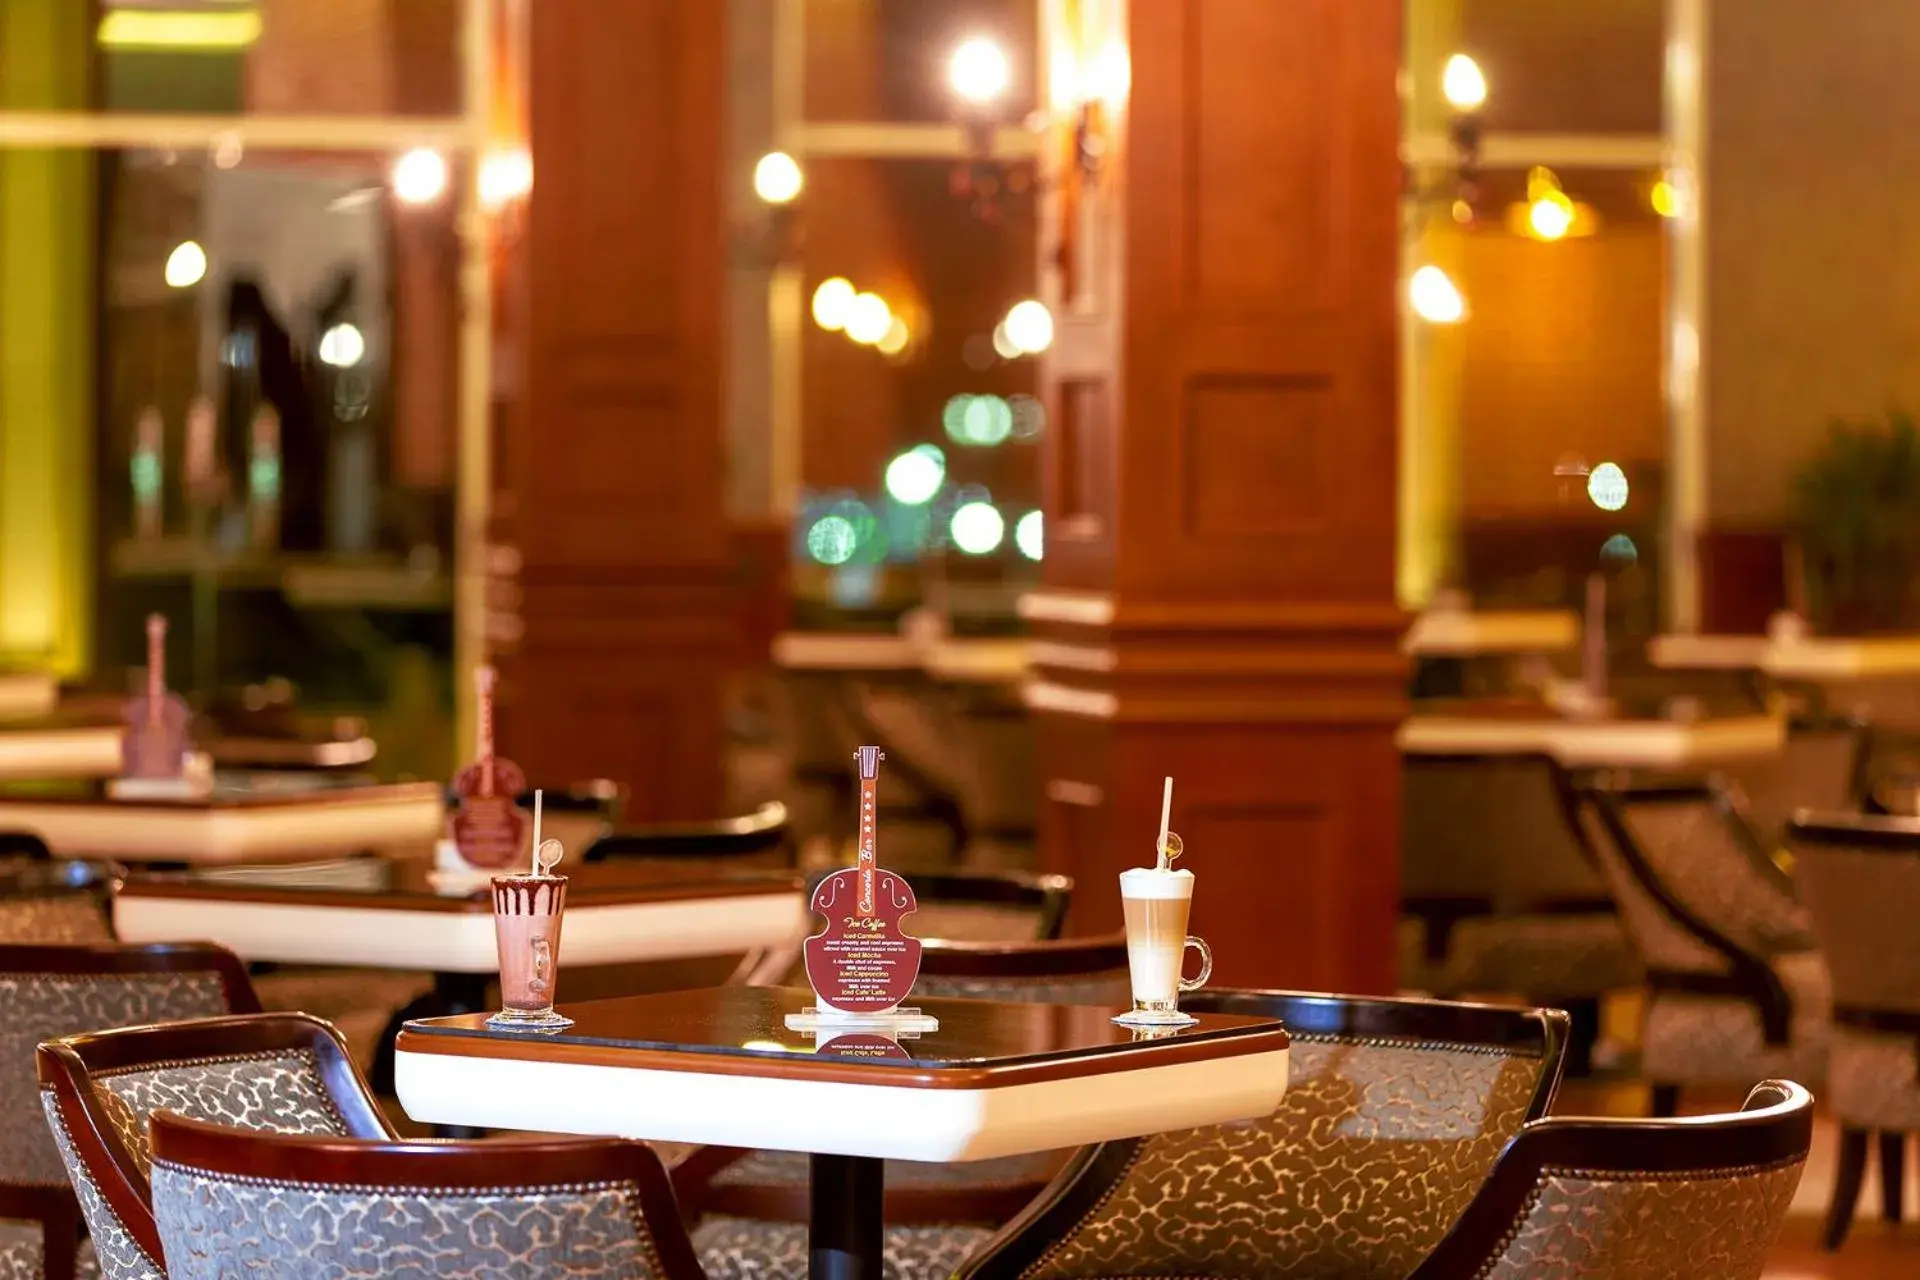 Lounge or bar, Restaurant/Places to Eat in Pickalbatros Aqua Blu Resort - Hurghada